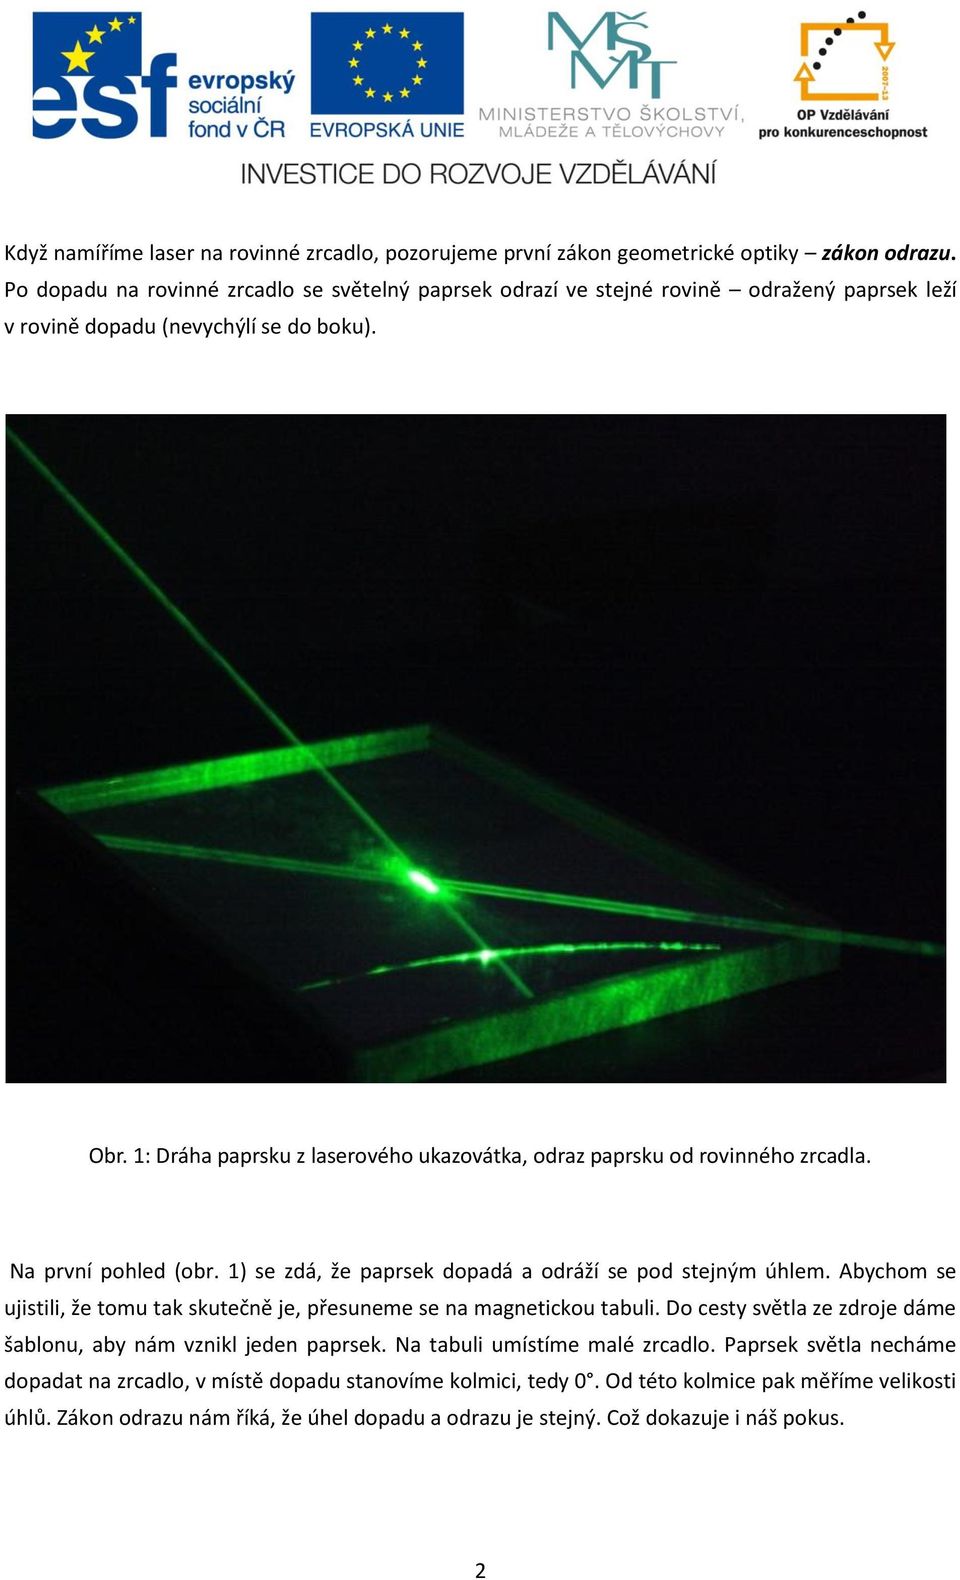 1: Dráha paprsku z laserového ukazovátka, odraz paprsku od rovinného zrcadla. Na první pohled (obr. 1) se zdá, že paprsek dopadá a odráží se pod stejným úhlem.